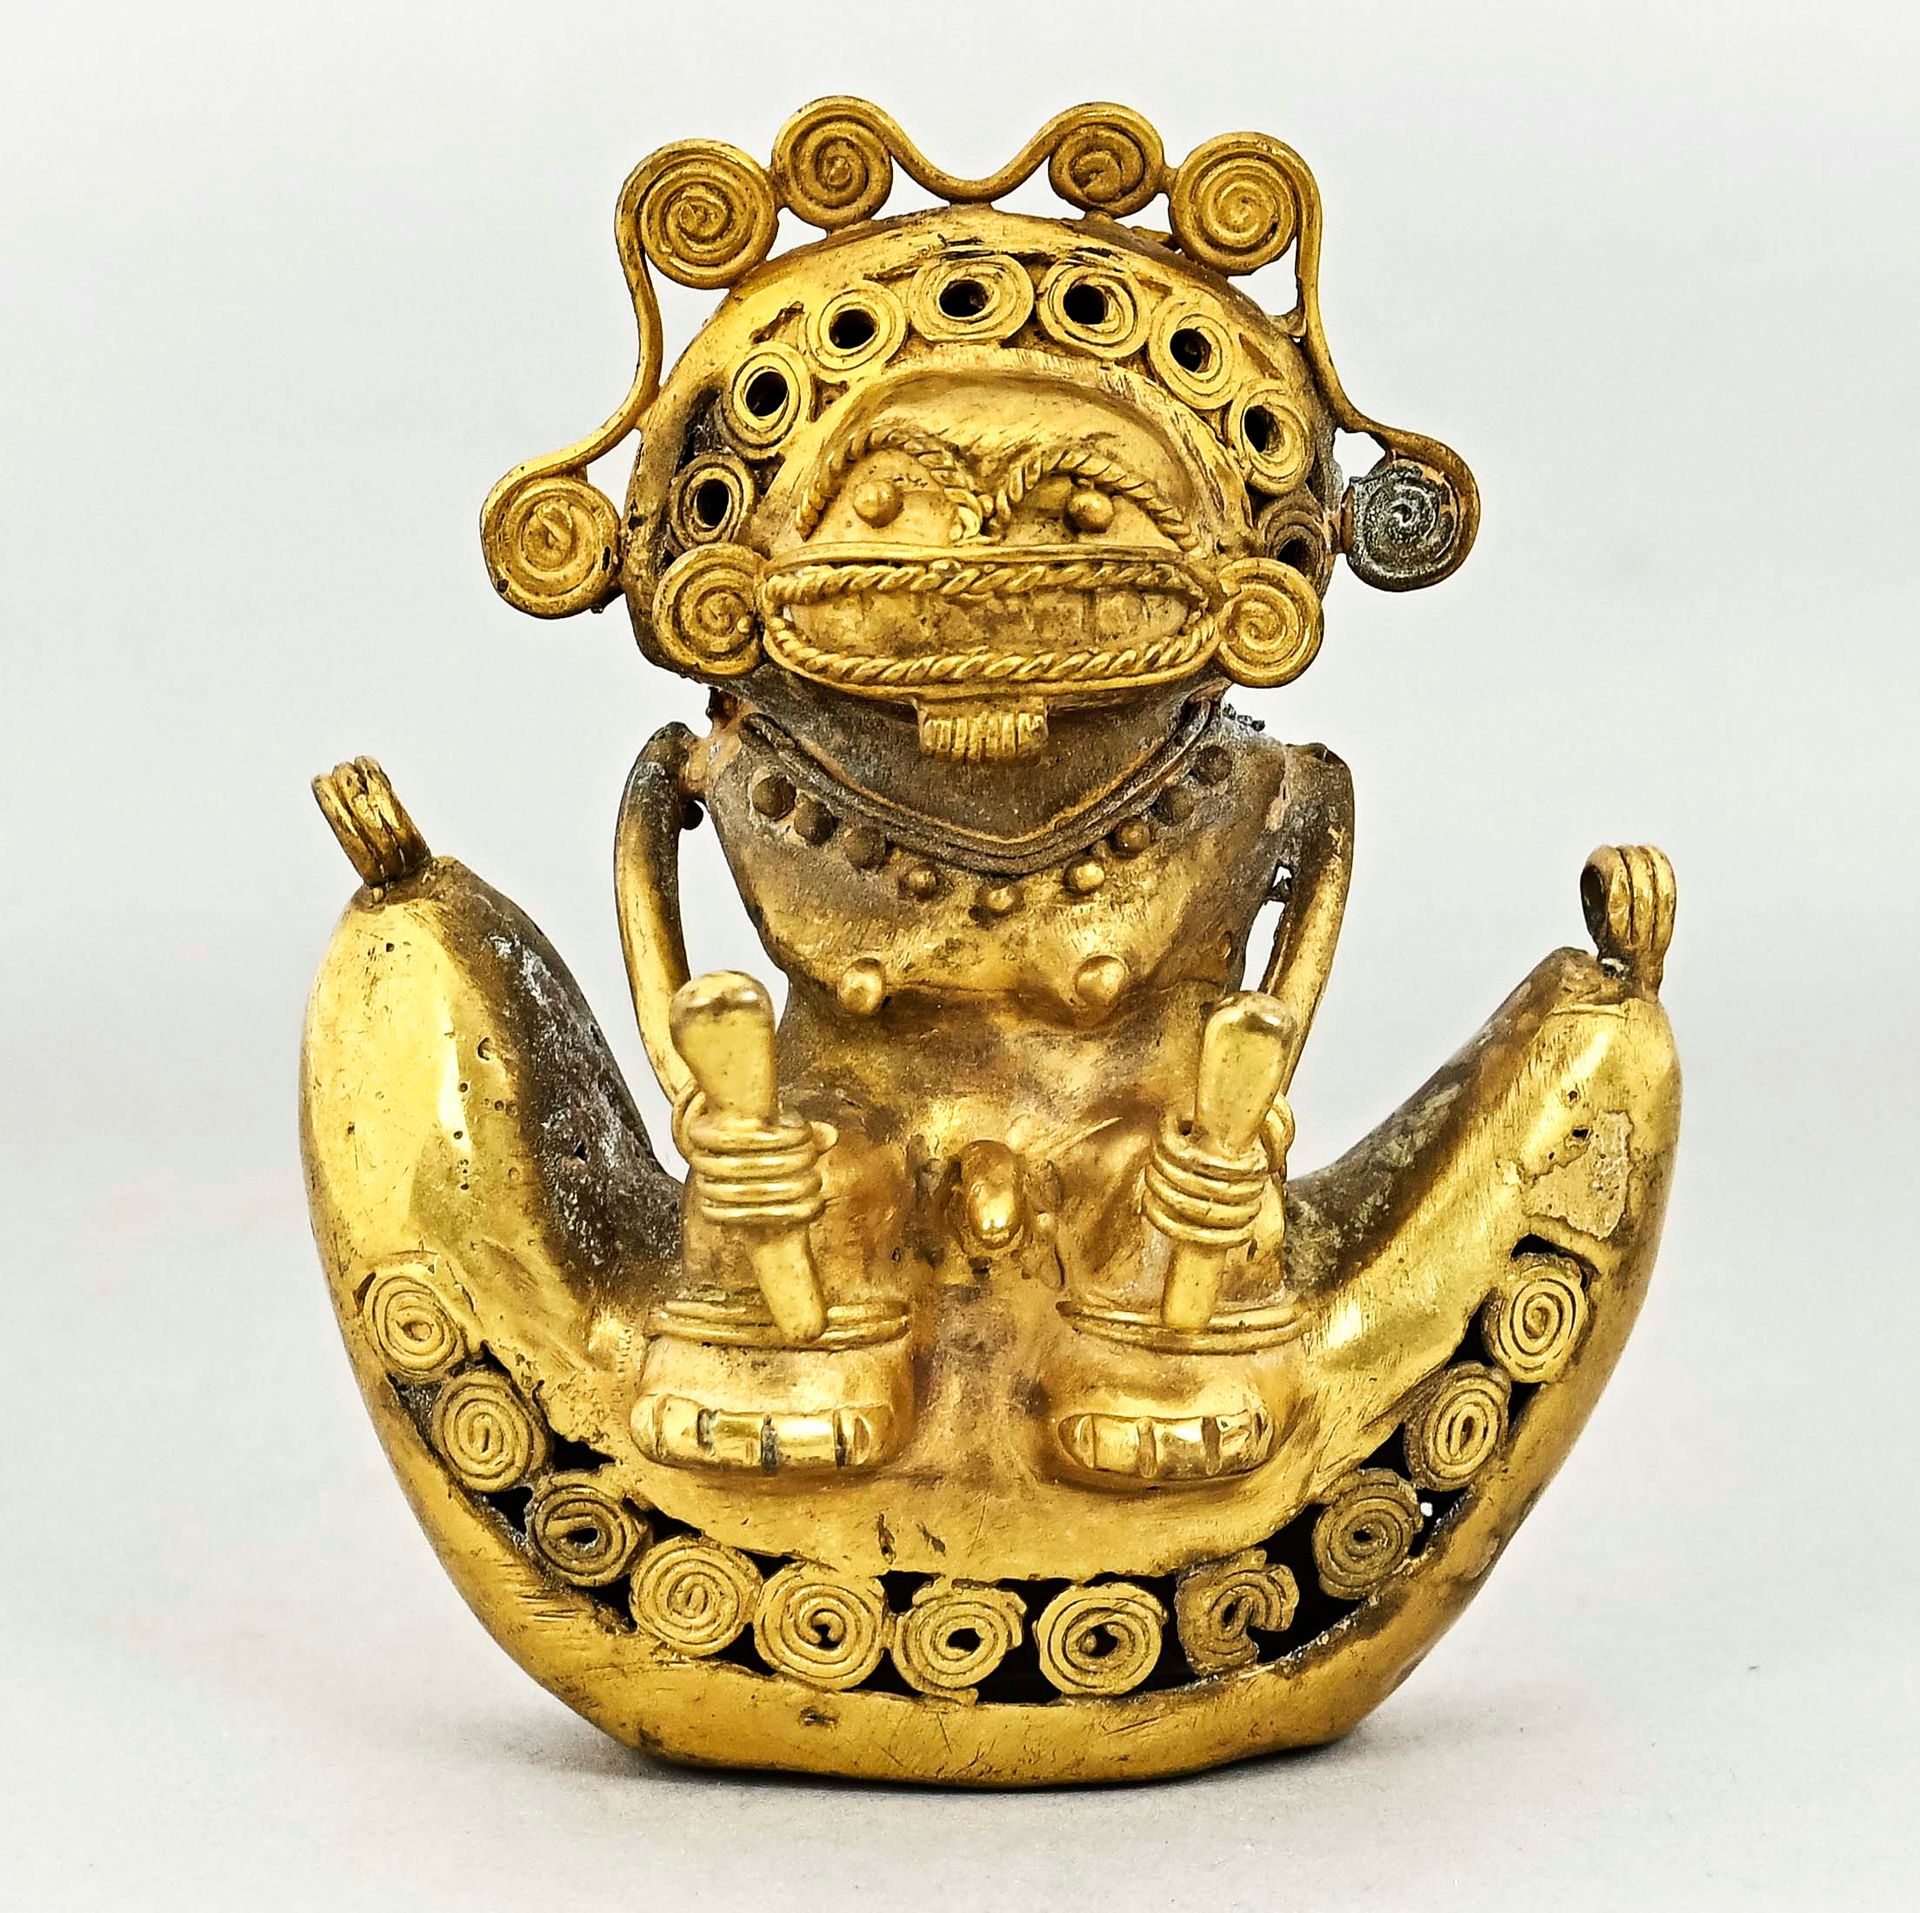 Null 大型萨满人物。昆巴亚，哥伦比亚，约公元1200年，失蜡铸造，Tumbaga金。高8，宽7厘米，重84克。


在一个镰刀形的底座上，身上有螺旋形的装饰&hellip;